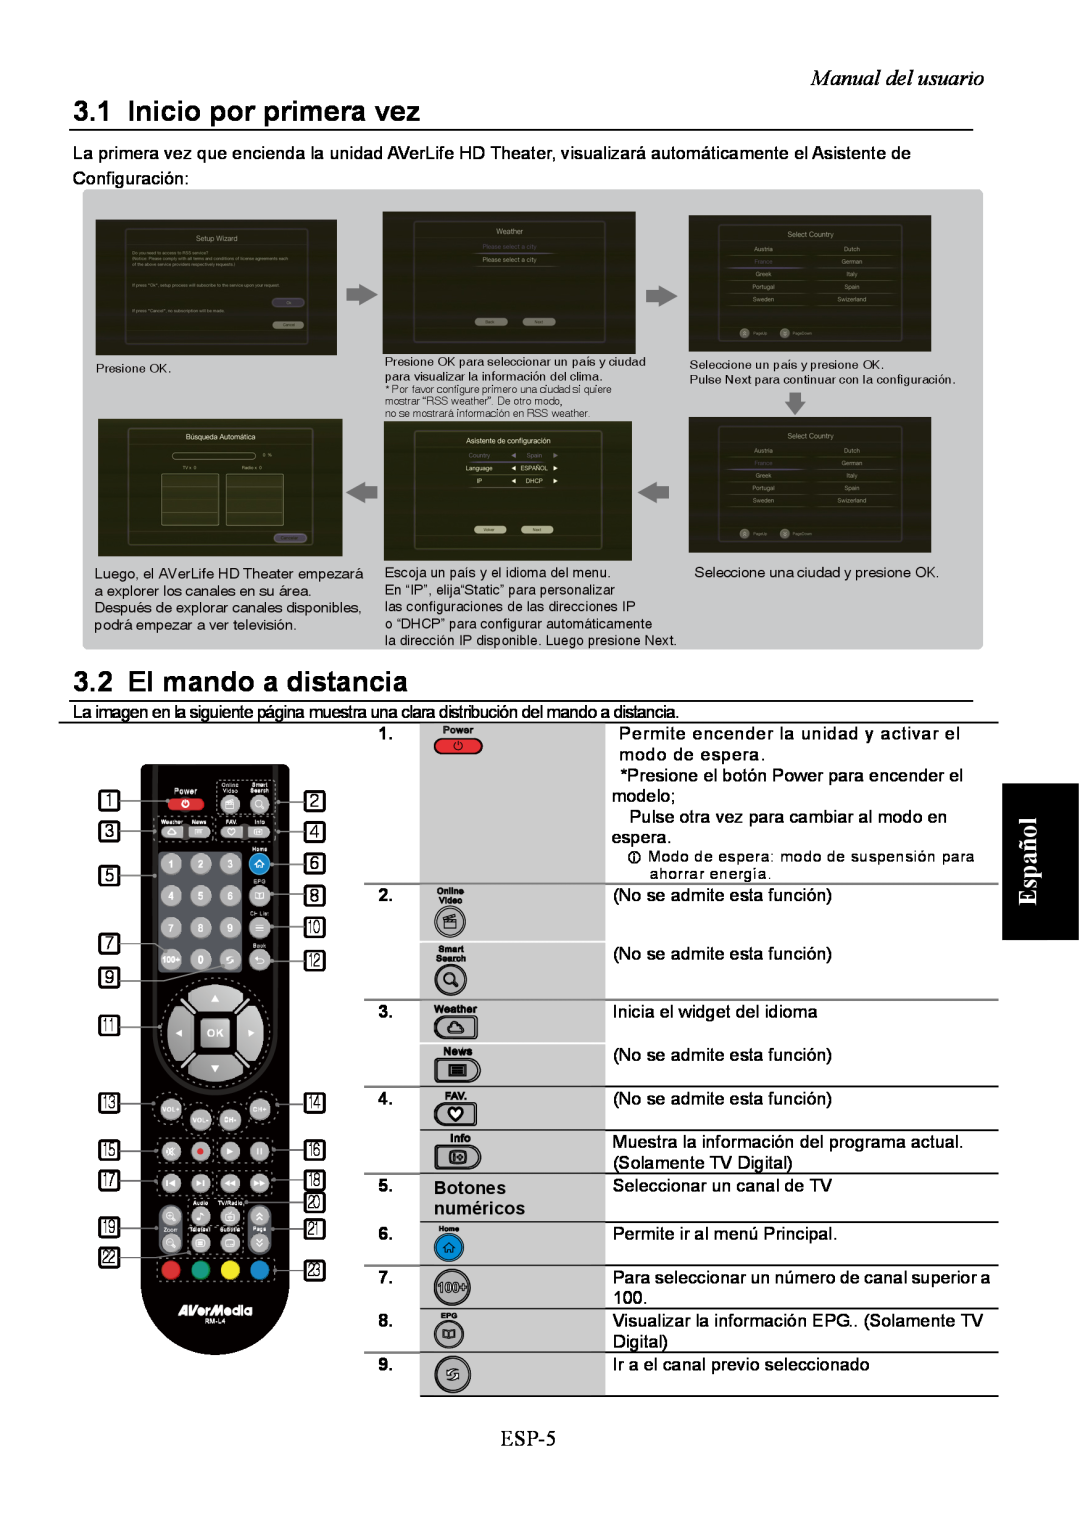 AVerMedia Technologies A211 user manual Inicio por primera vez, El mando a distancia, Español, Manual del usuario, ESP-5 